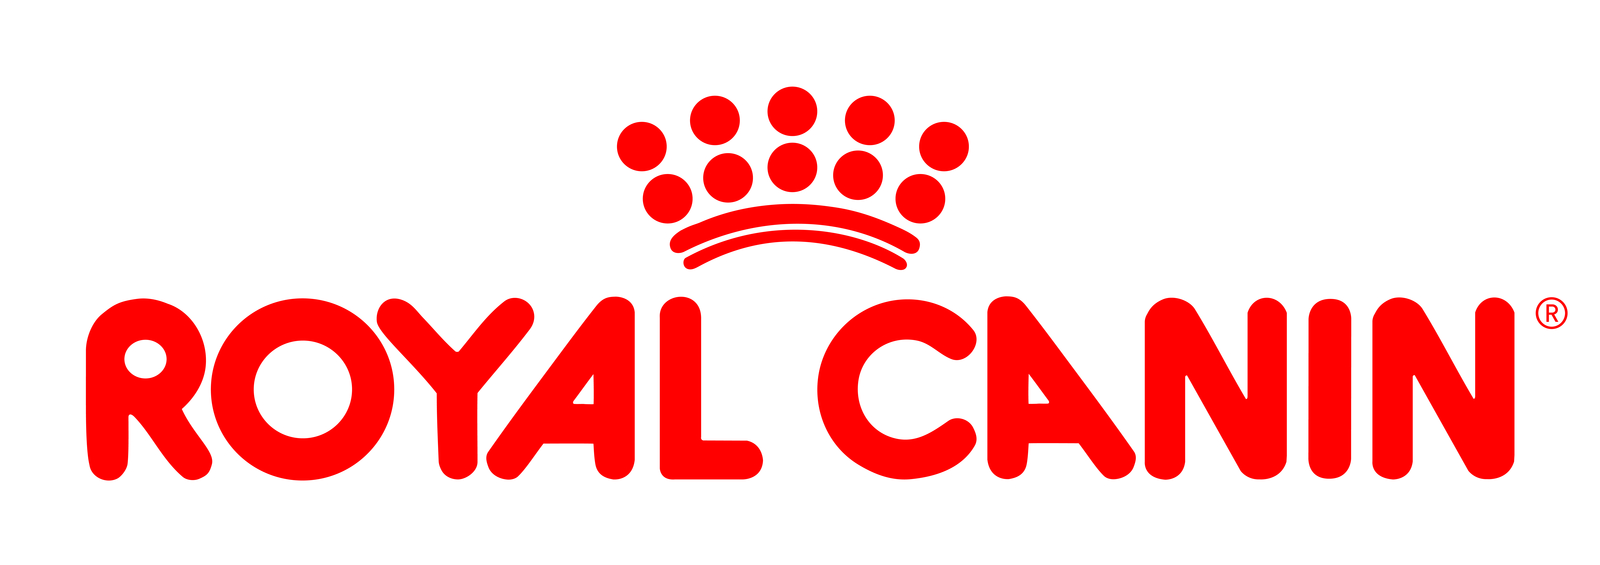 logo-royalcanin-cmyk